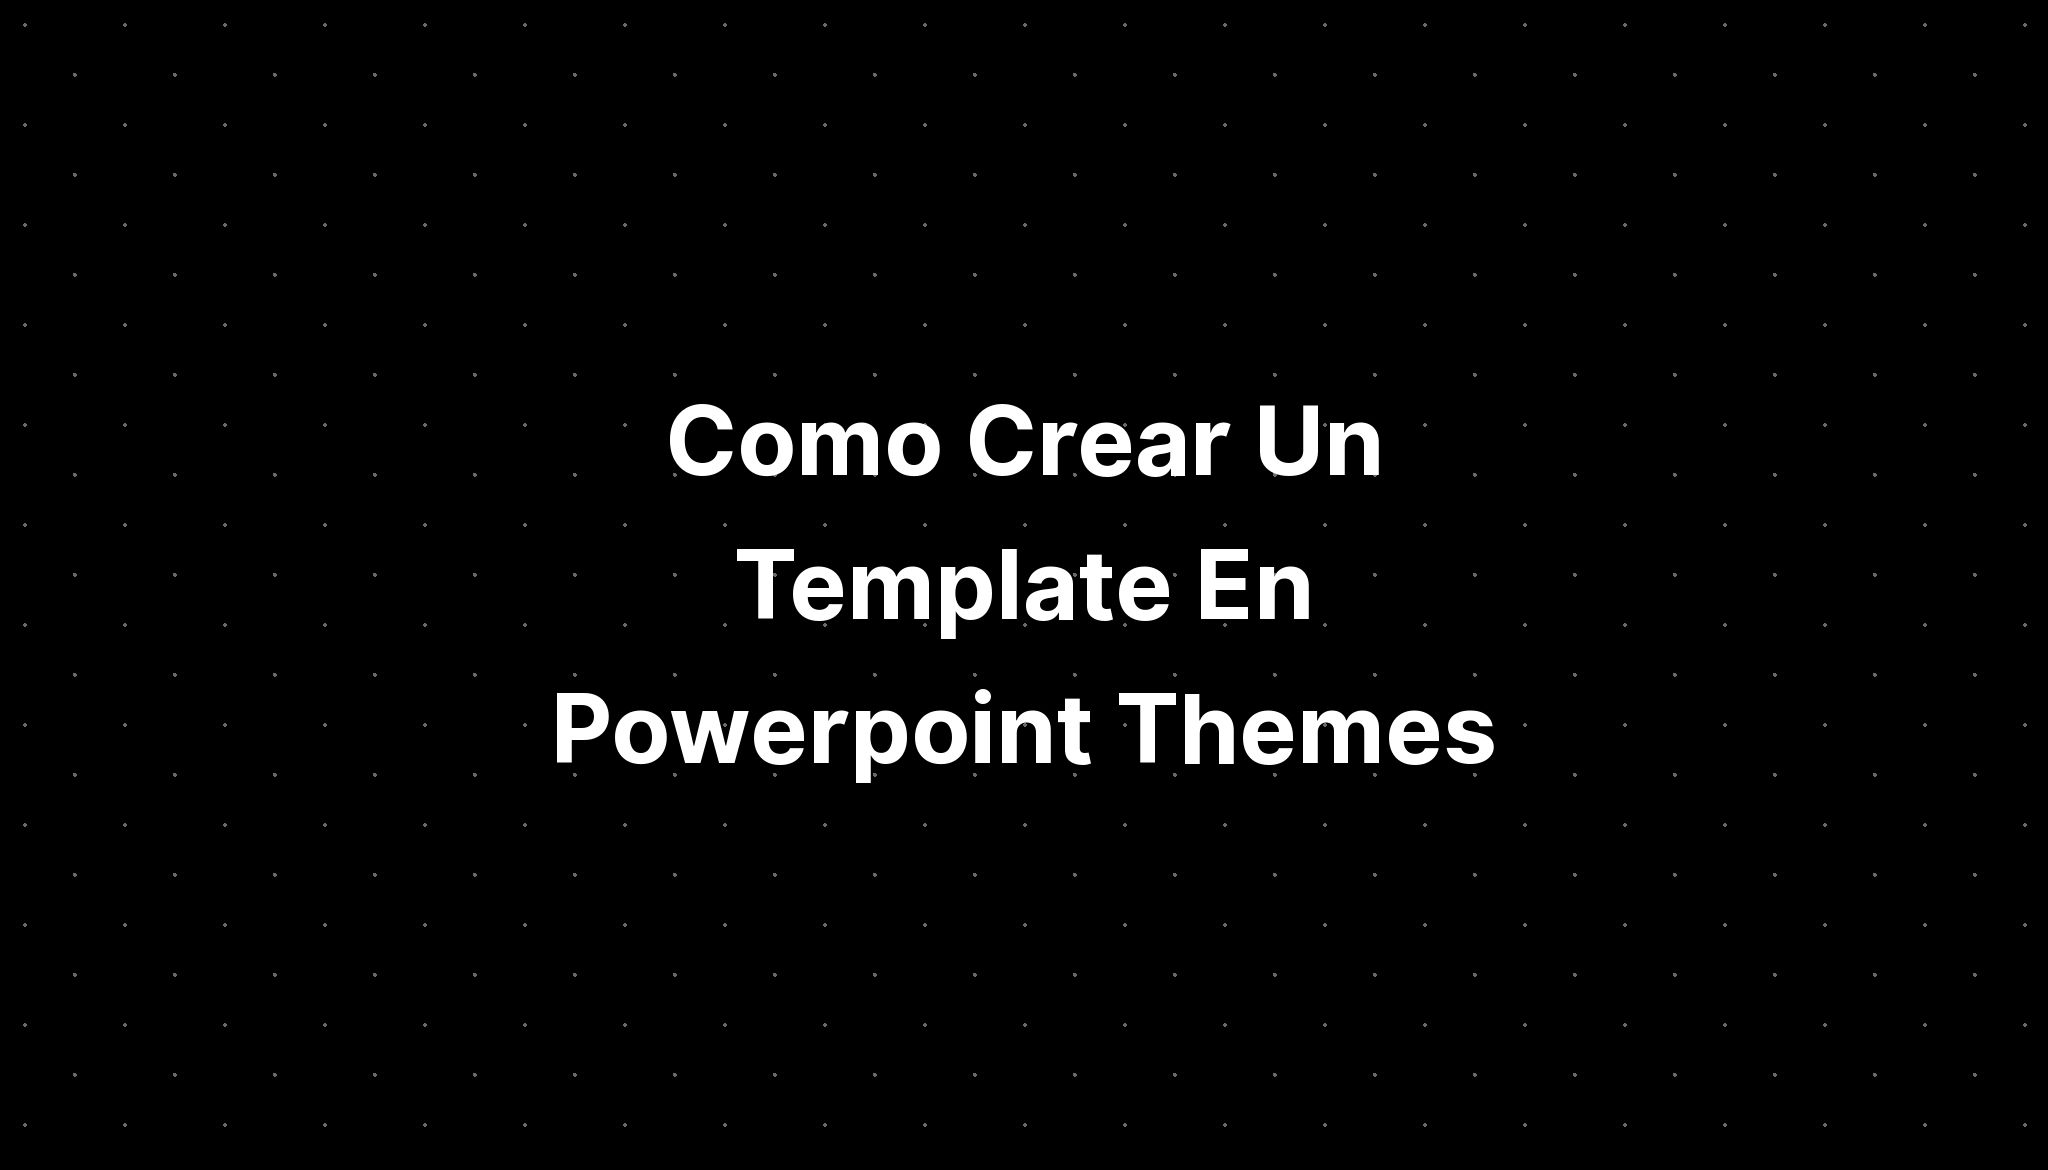 como-crear-un-template-en-powerpoint-themes-imagesee